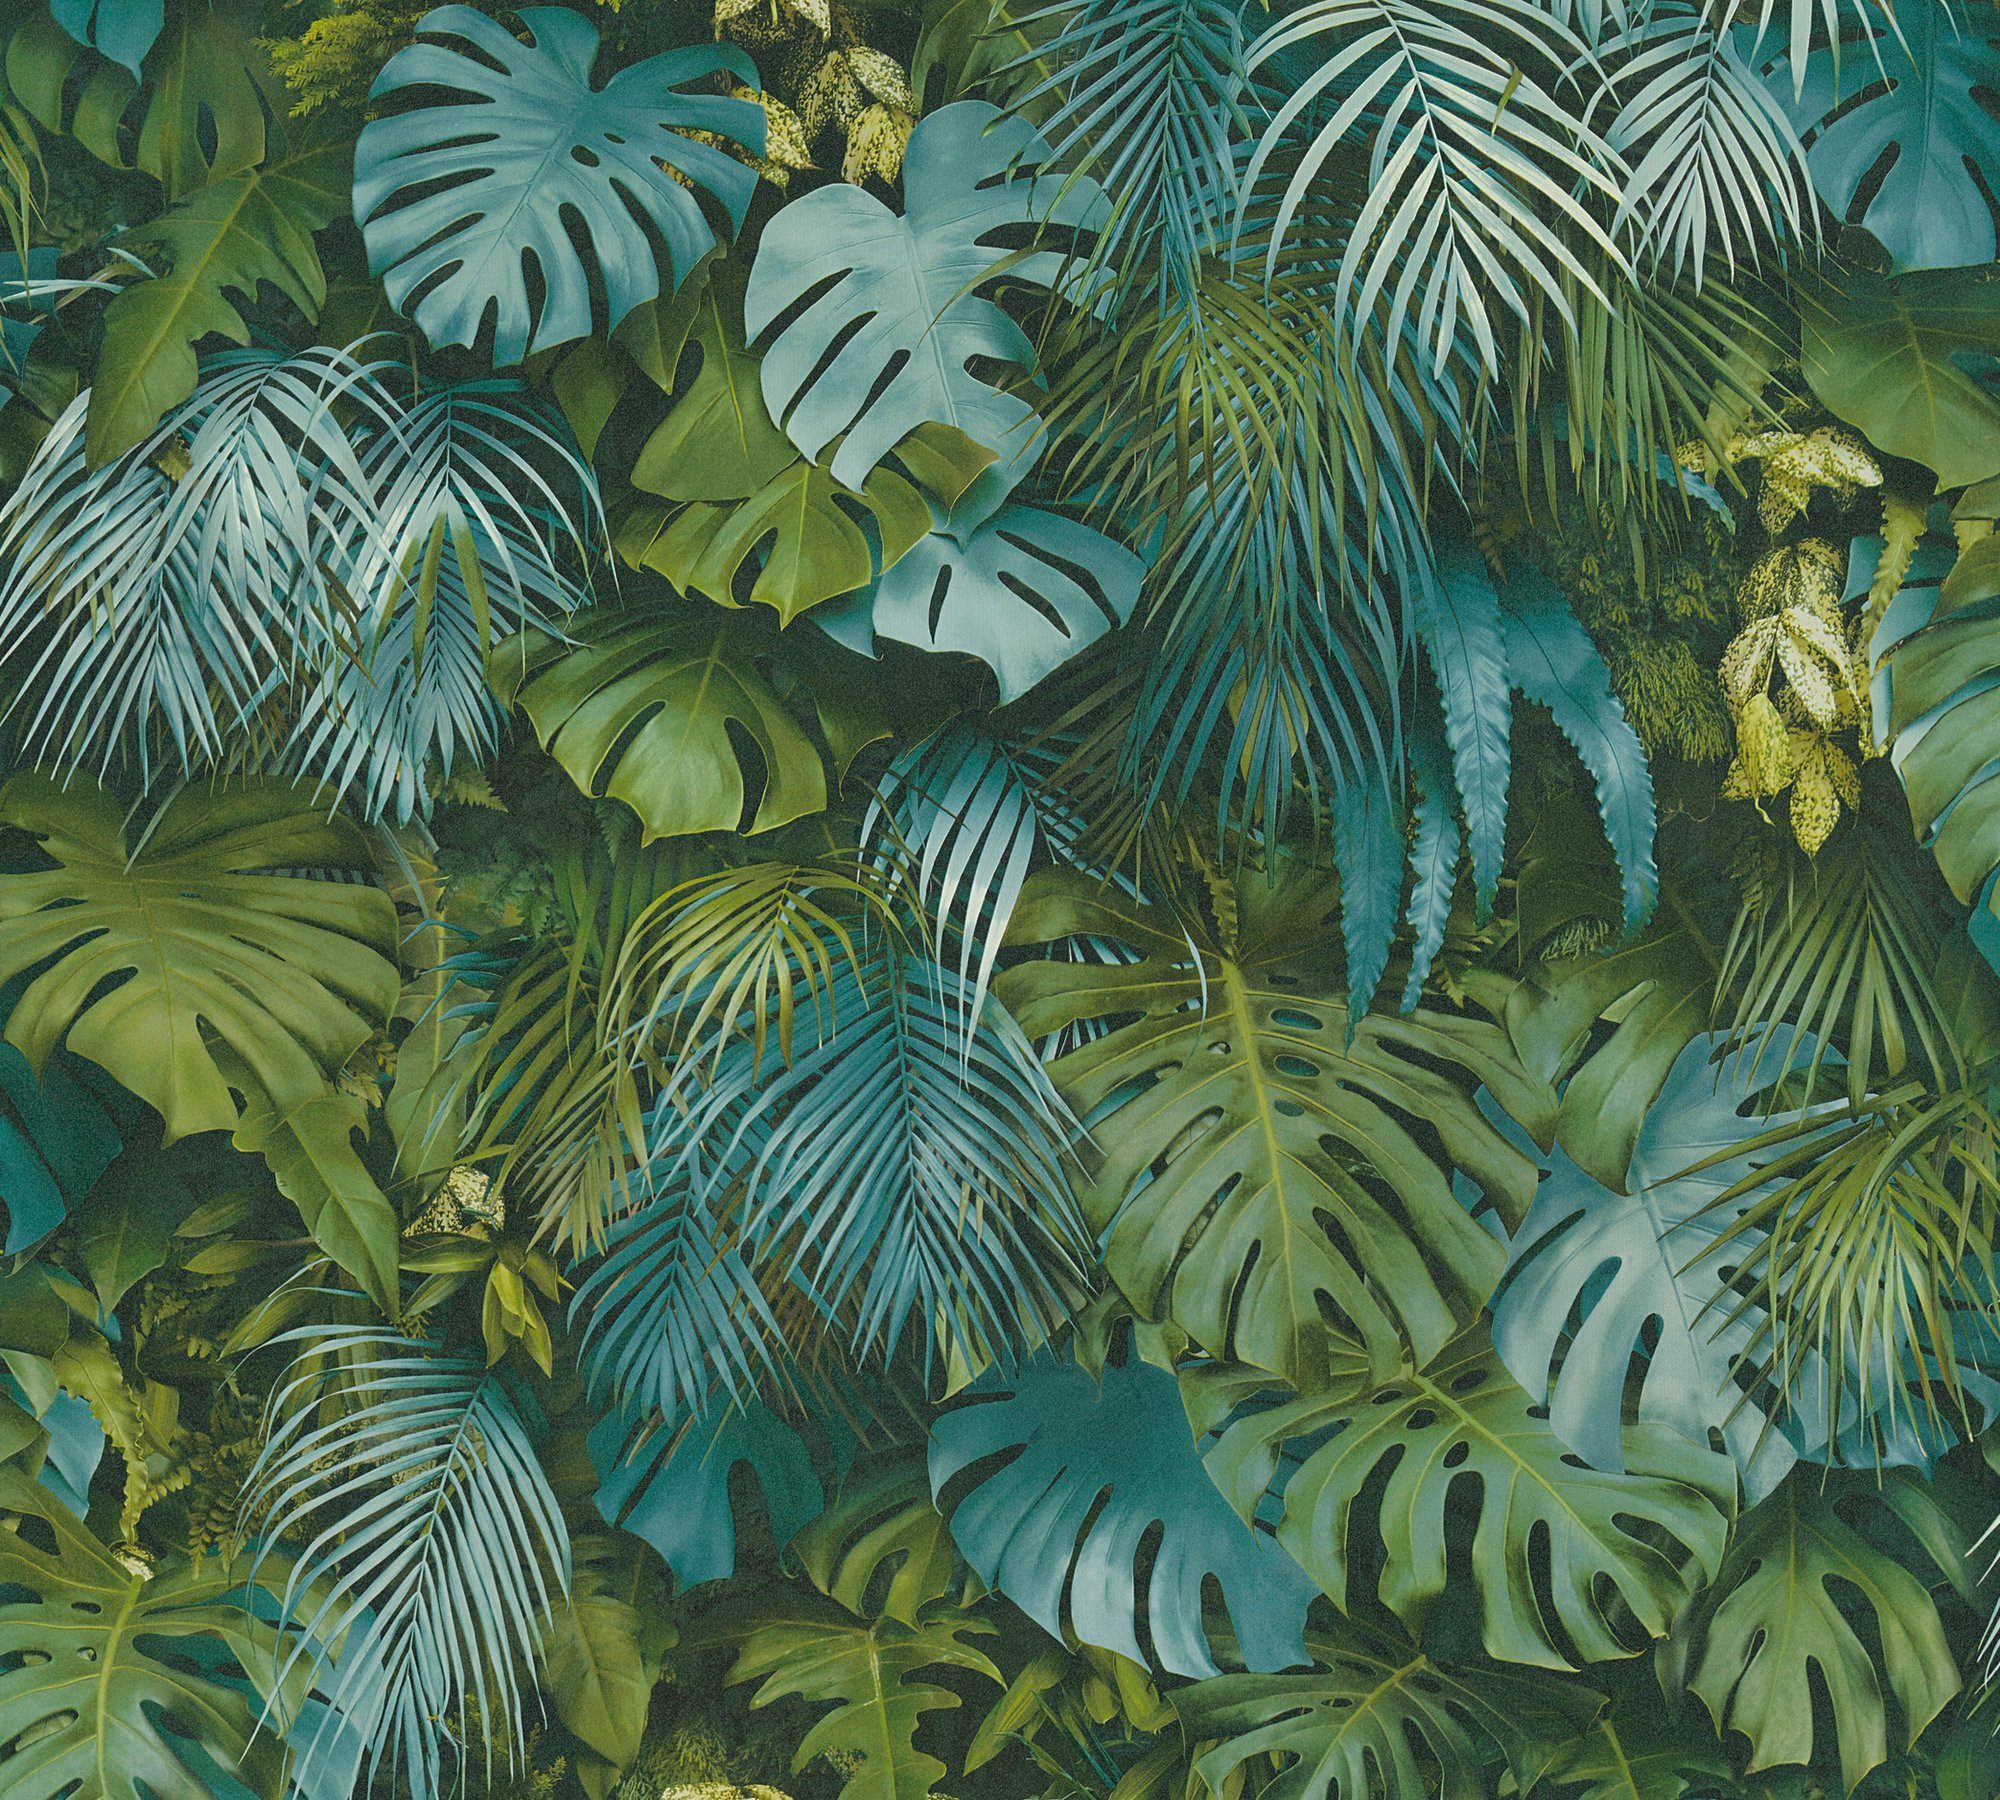 A.S. Création Vliestapete Palmentapete Optik, Tapete mit floral, Greenery in Palmenprint Dschungel Dschungel bunt/blau